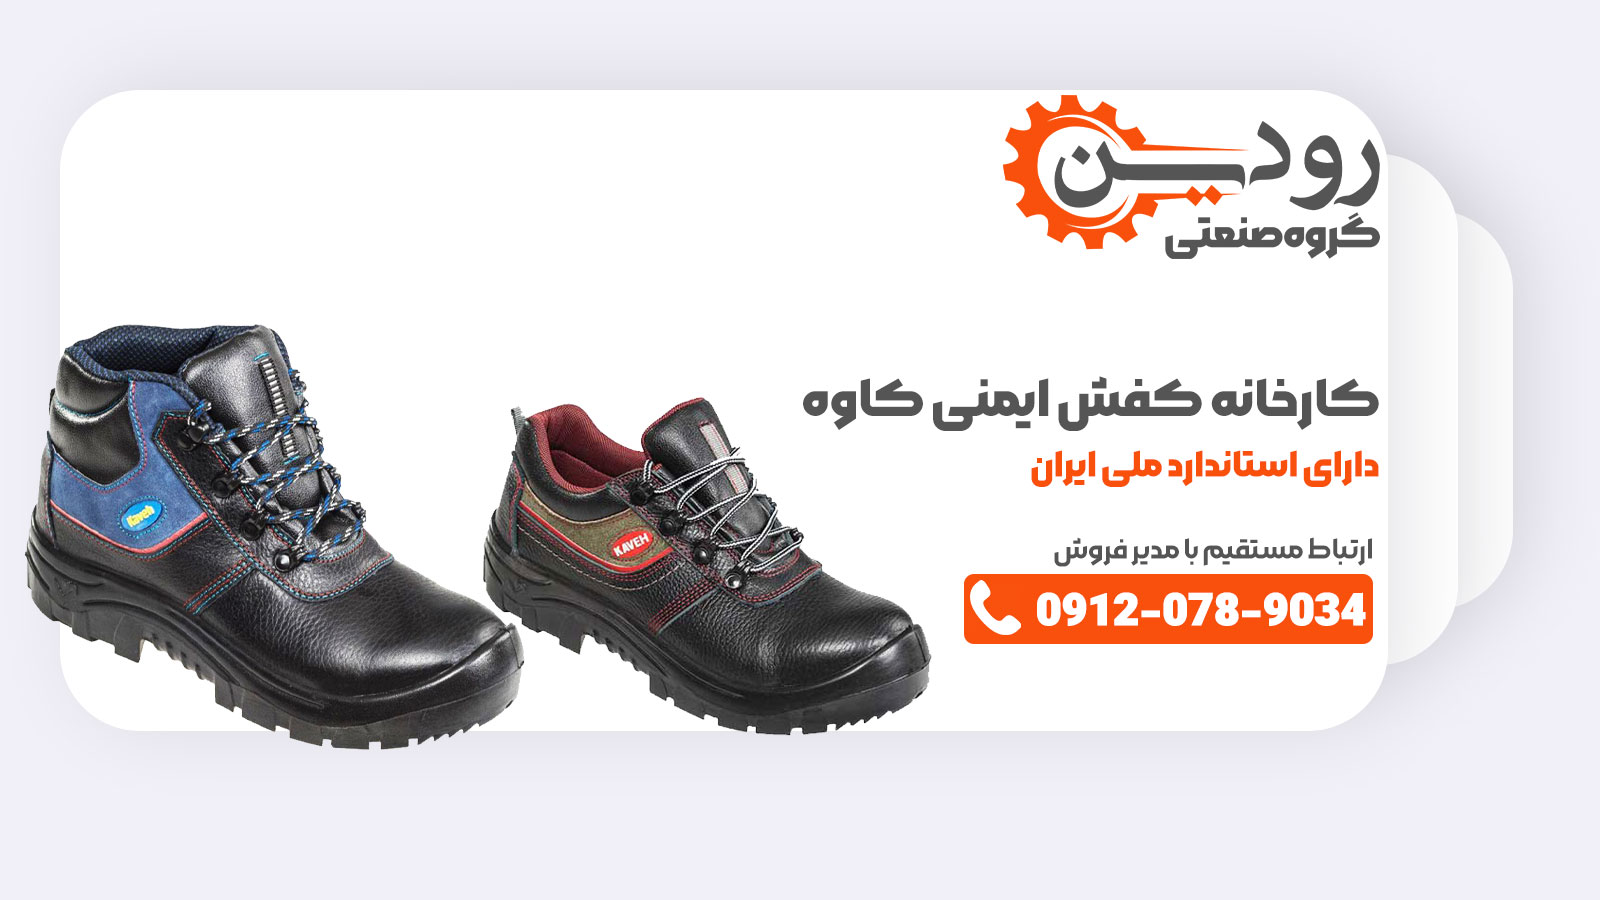 کارخانه تولید کفش ایمنی کاوه کجاست؟ در تبریز وجود دارد و خرید خود را بصورت اینترنتی میتوانید انجام دهید.